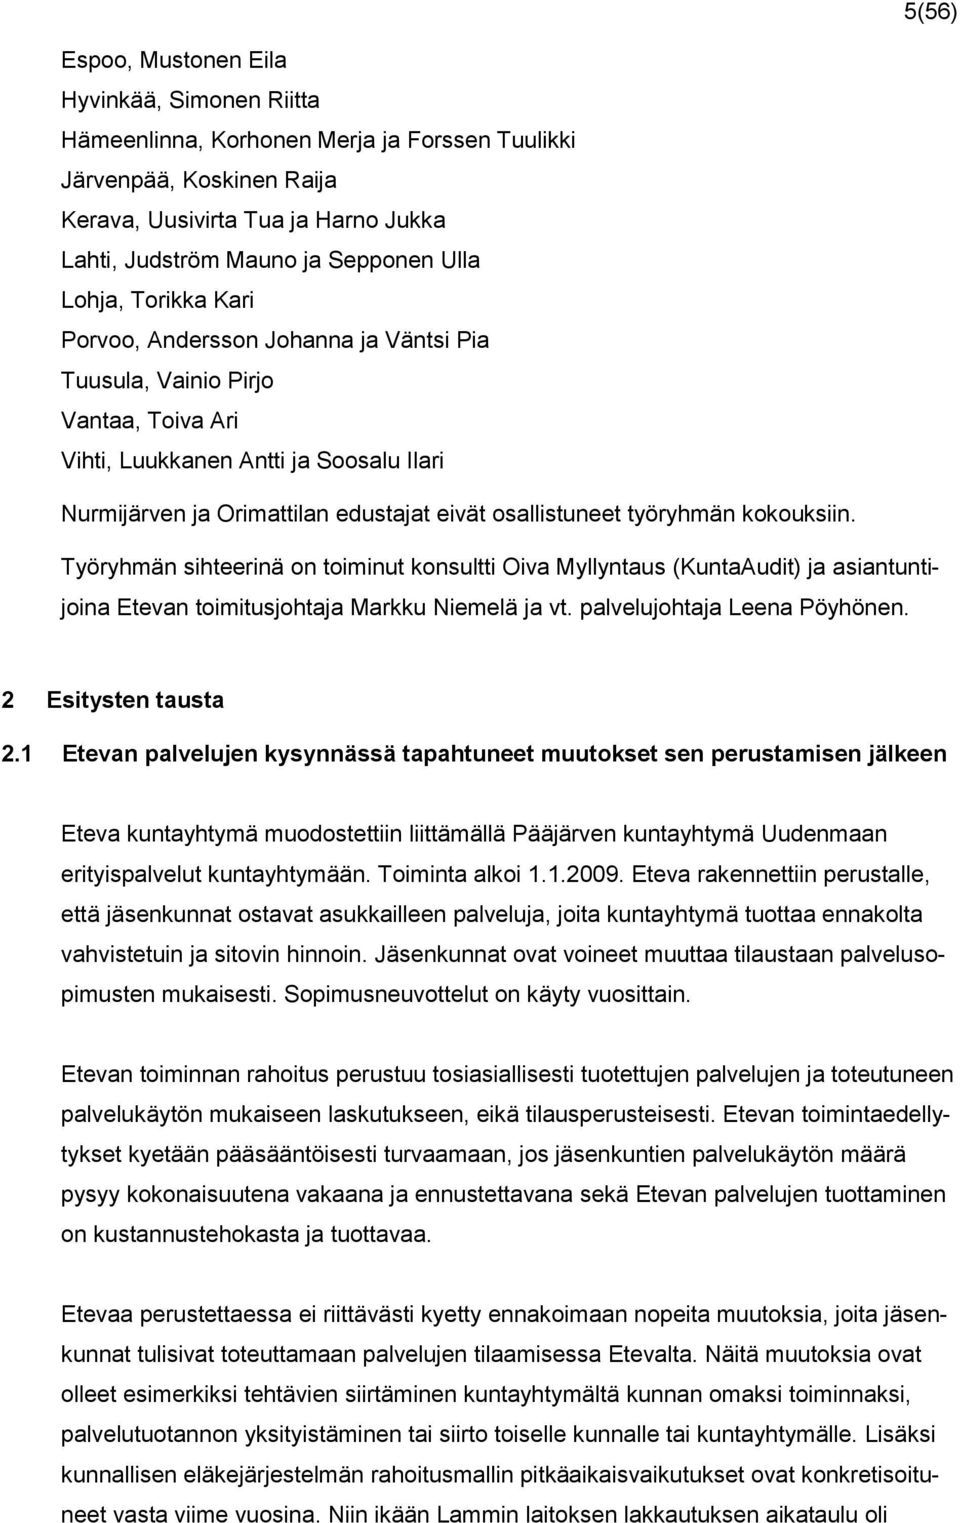 osallistuneet työryhmän kokouksiin. Työryhmän sihteerinä on toiminut konsultti Oiva Myllyntaus (KuntaAudit) ja asiantuntijoina Etevan toimitusjohtaja Markku Niemelä ja vt.